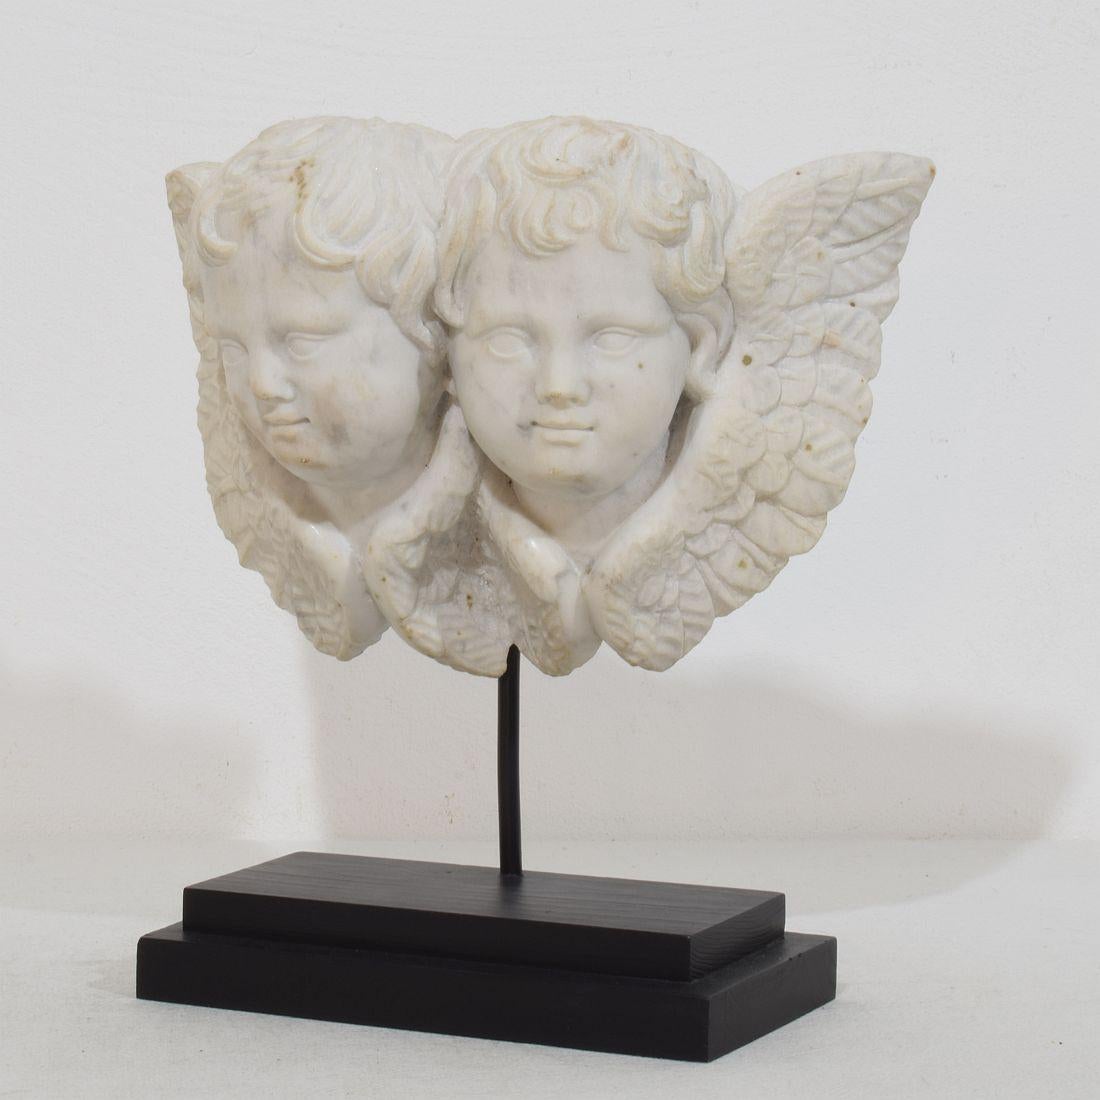 Magnifique et unique aile en marbre blanc sculptée à la main.  ornement à double tête d'ange.
Italie, vers 1750.
Usé par les intempéries .
Les mesures comprennent la base en bois.
H:24cm  L:23cm P:10cm 